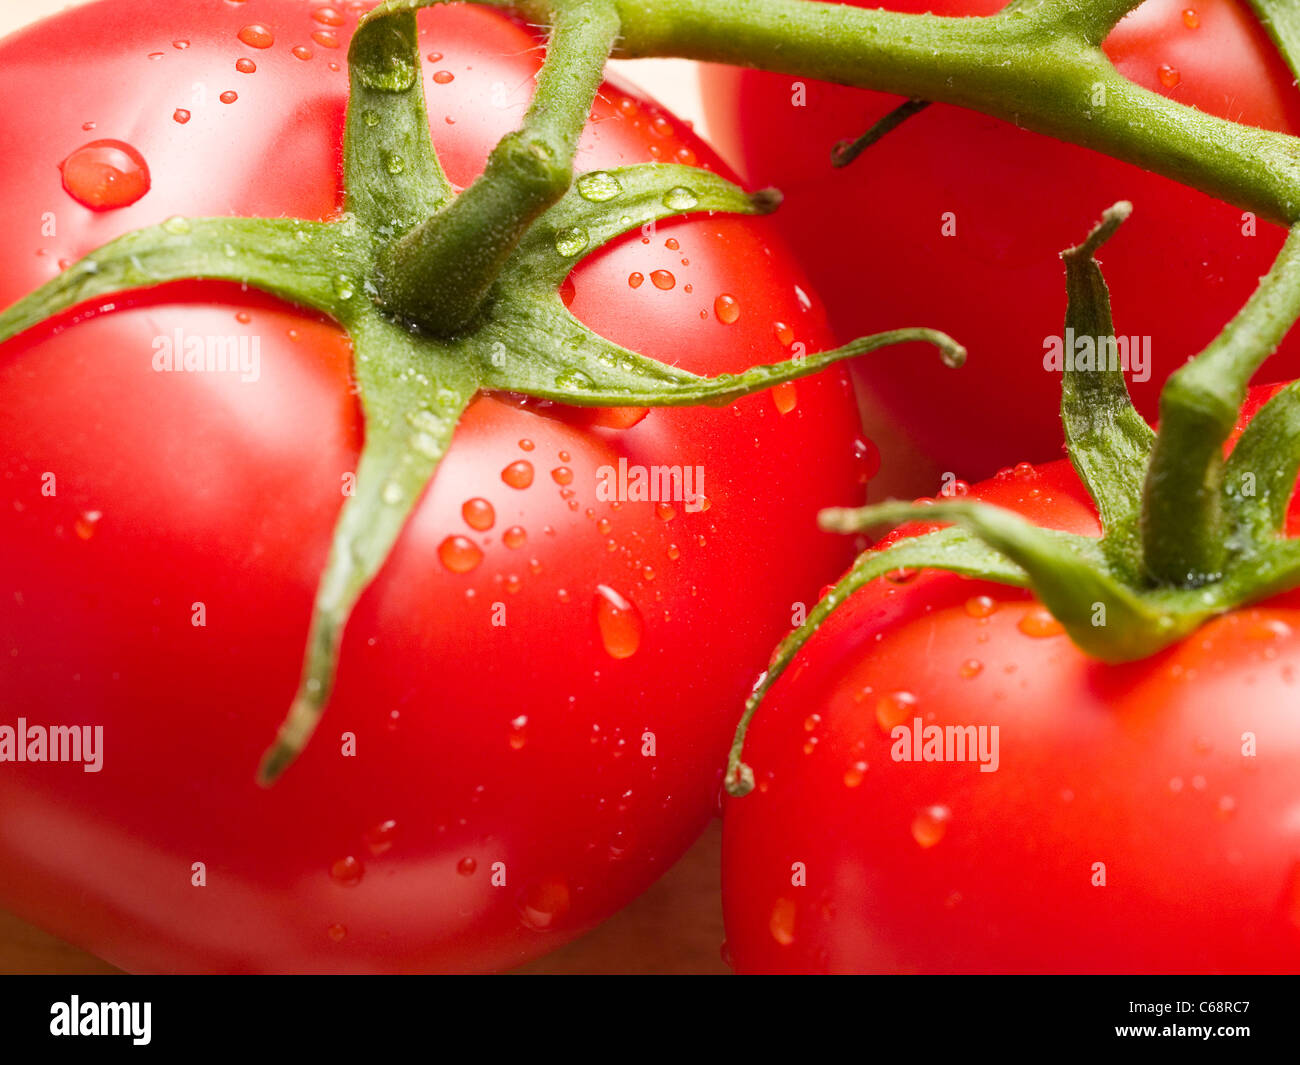 Detailaufnahme von nassen Tomaten | photo de détail tomates humide Banque D'Images